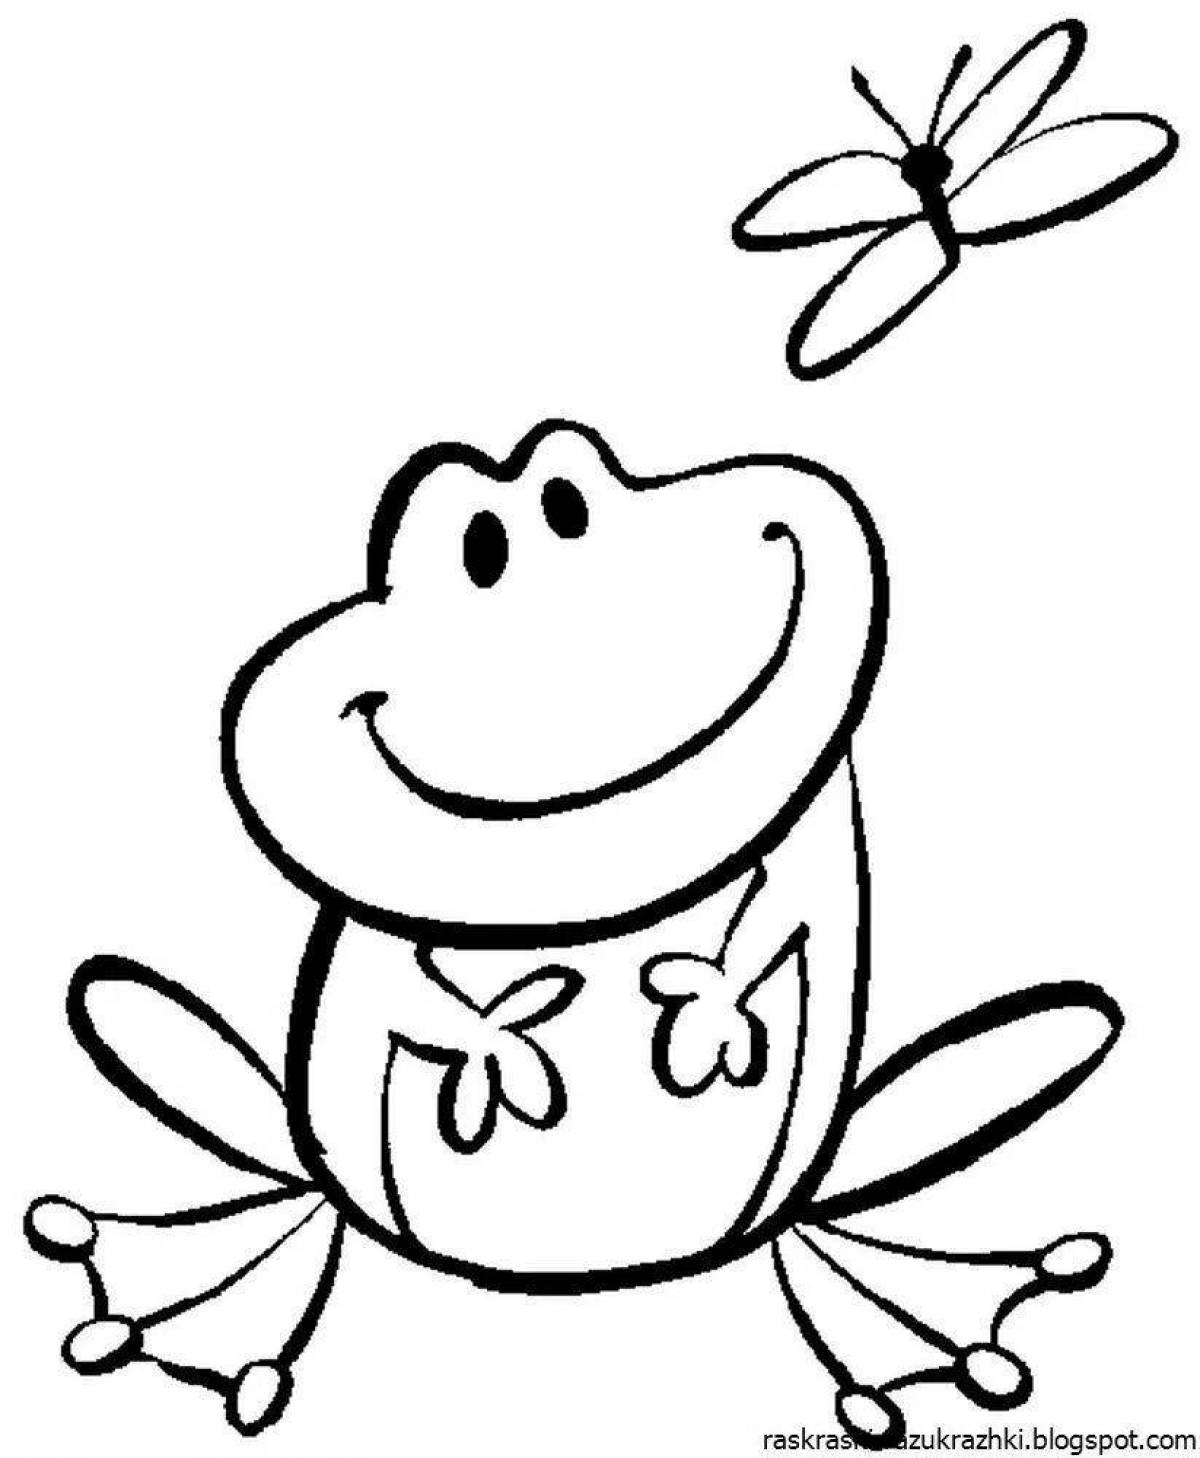 Увлекательная раскраска лягушка для детей 4-5 лет